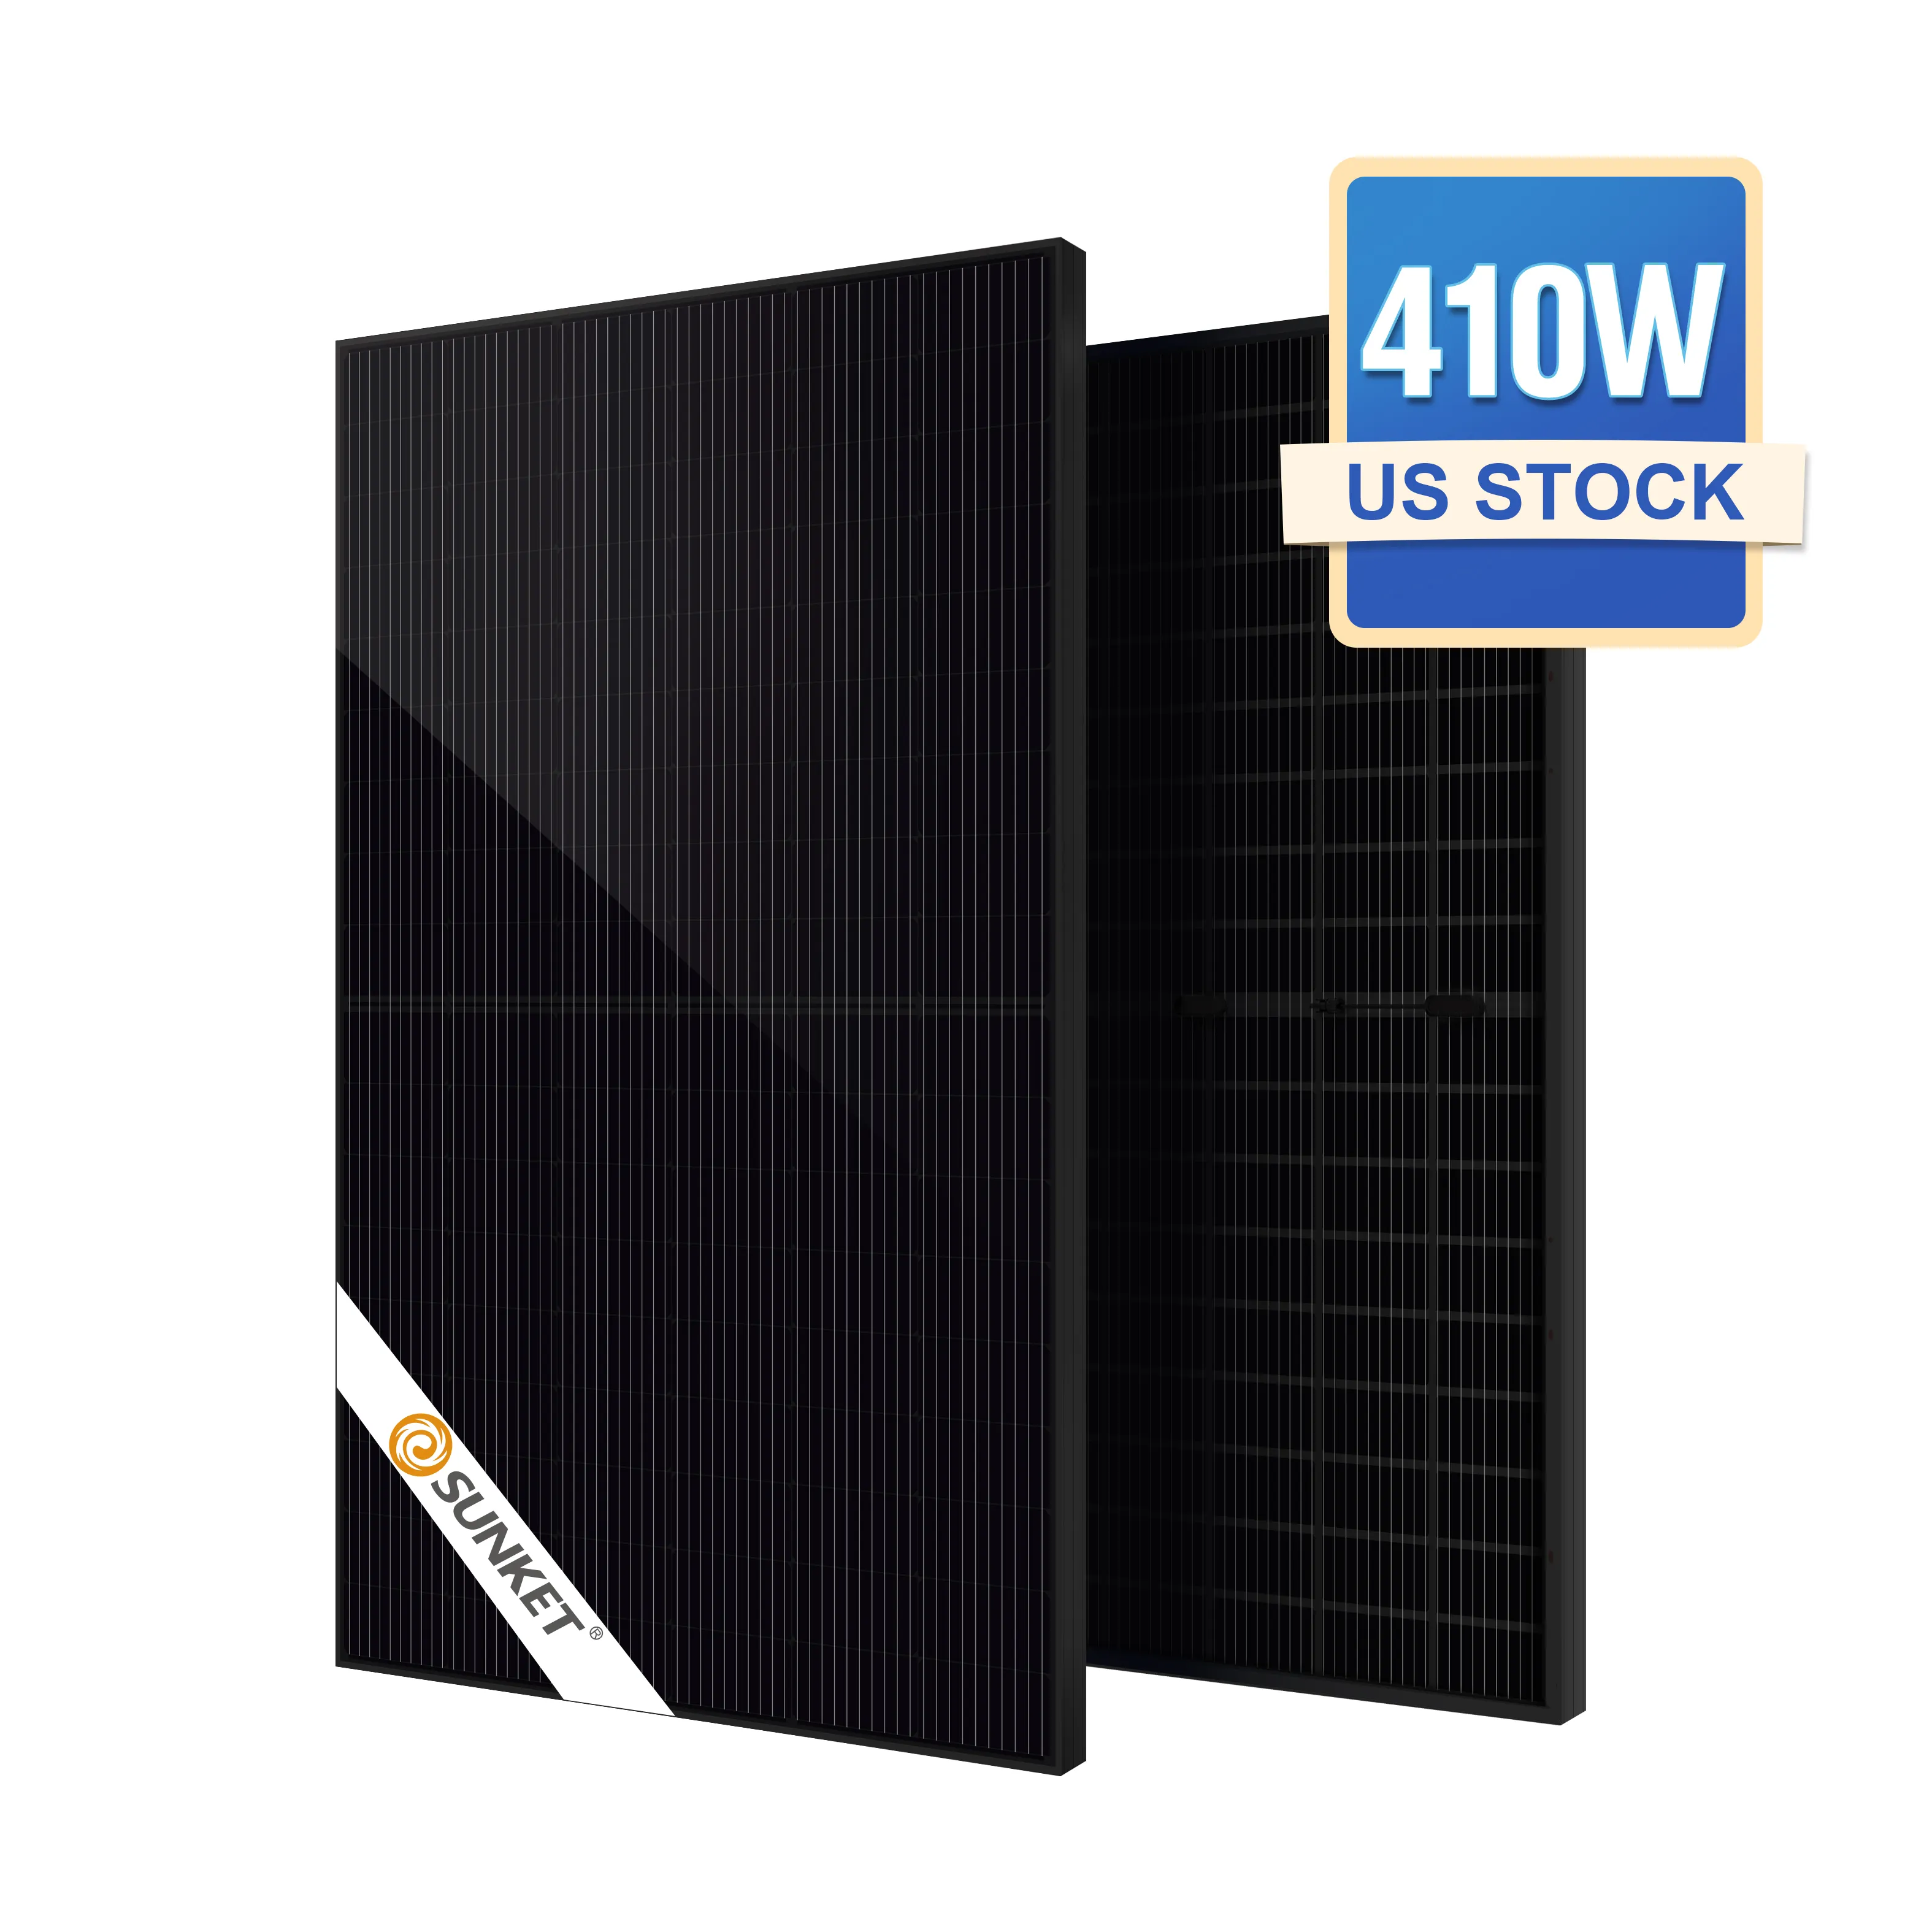 Marco de plata Tipo P 405W 410W Paneles solares Solares Costos Panel solar 550W EE. UU. Precio de vendedores de almacén Kit completo para el hogar